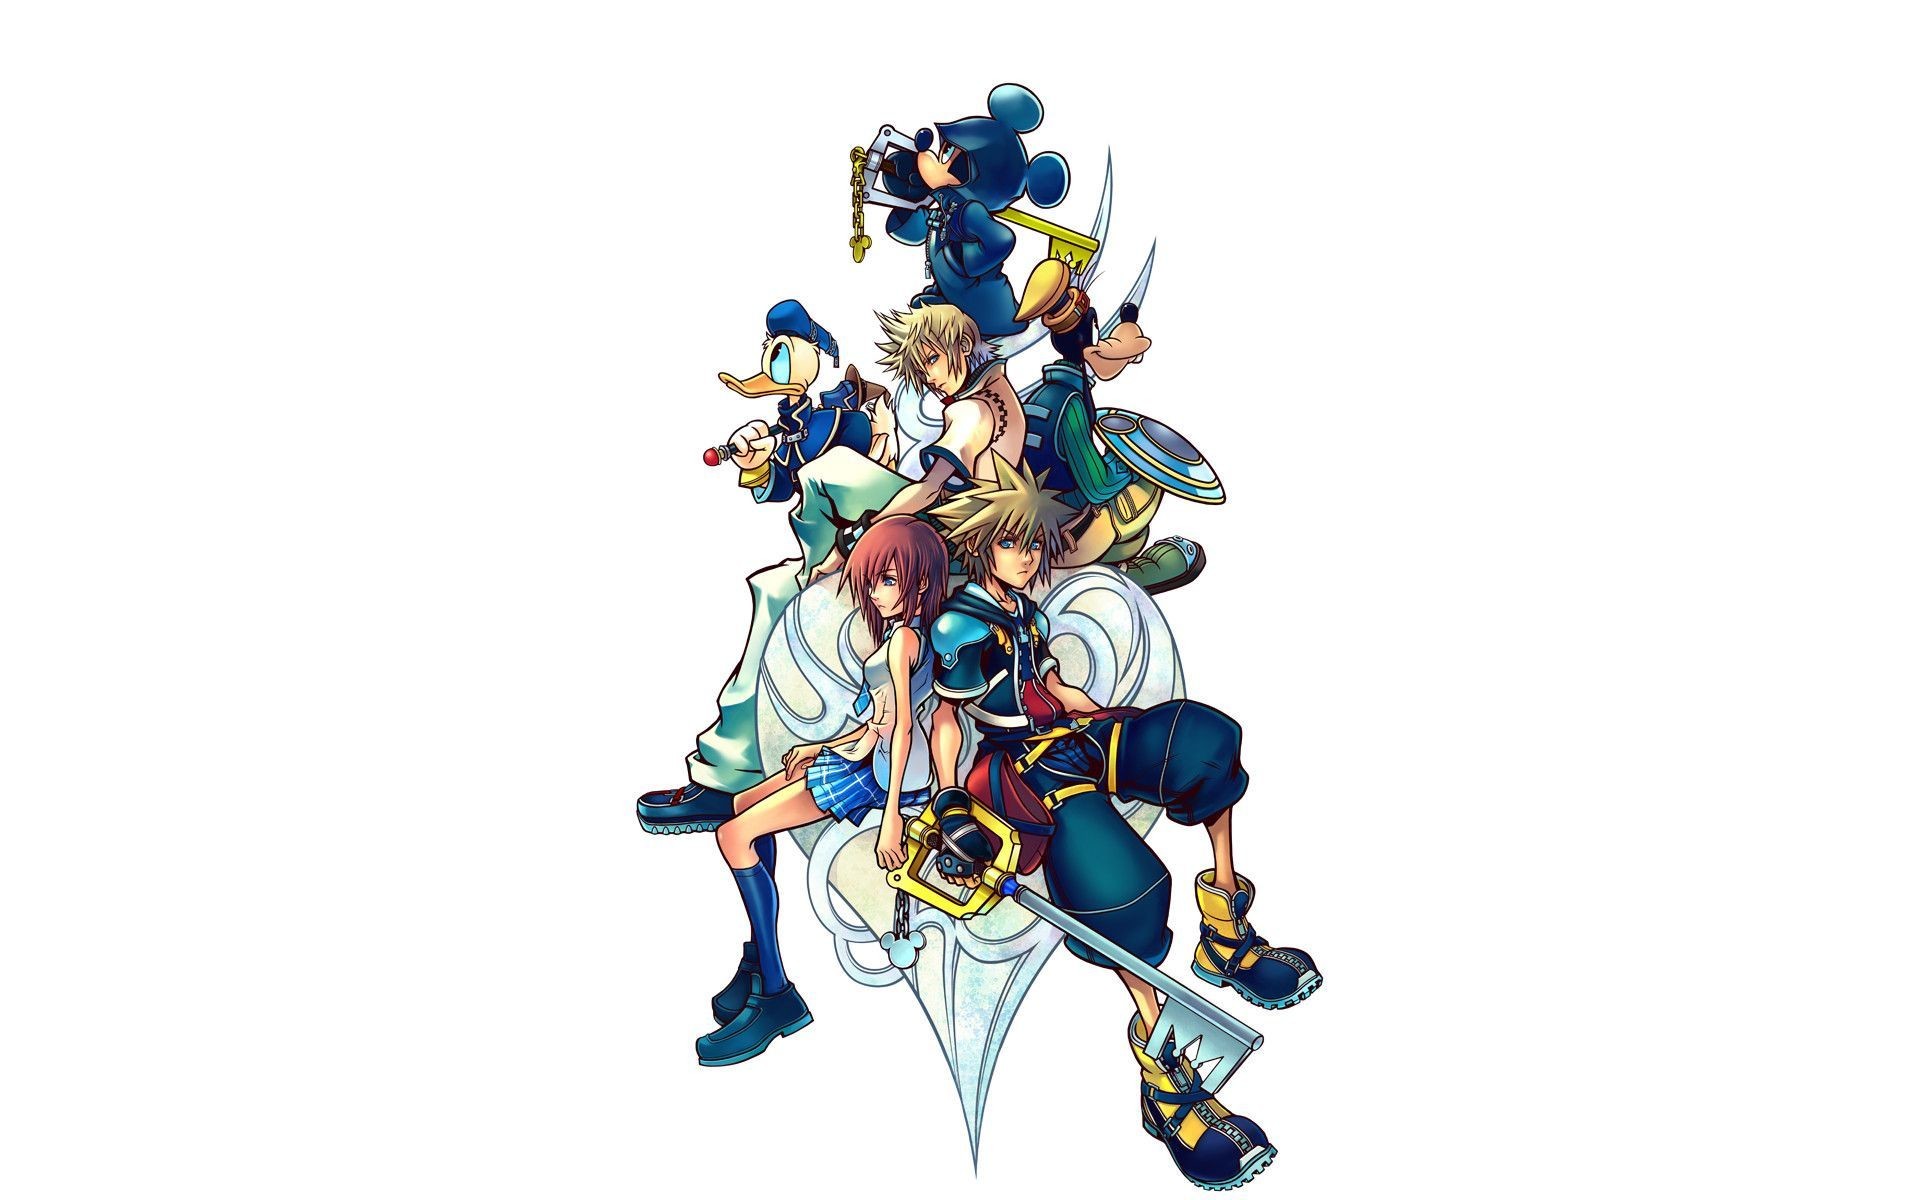 Kingdom Hearts Wallpaper HD 9020 1600x1200px